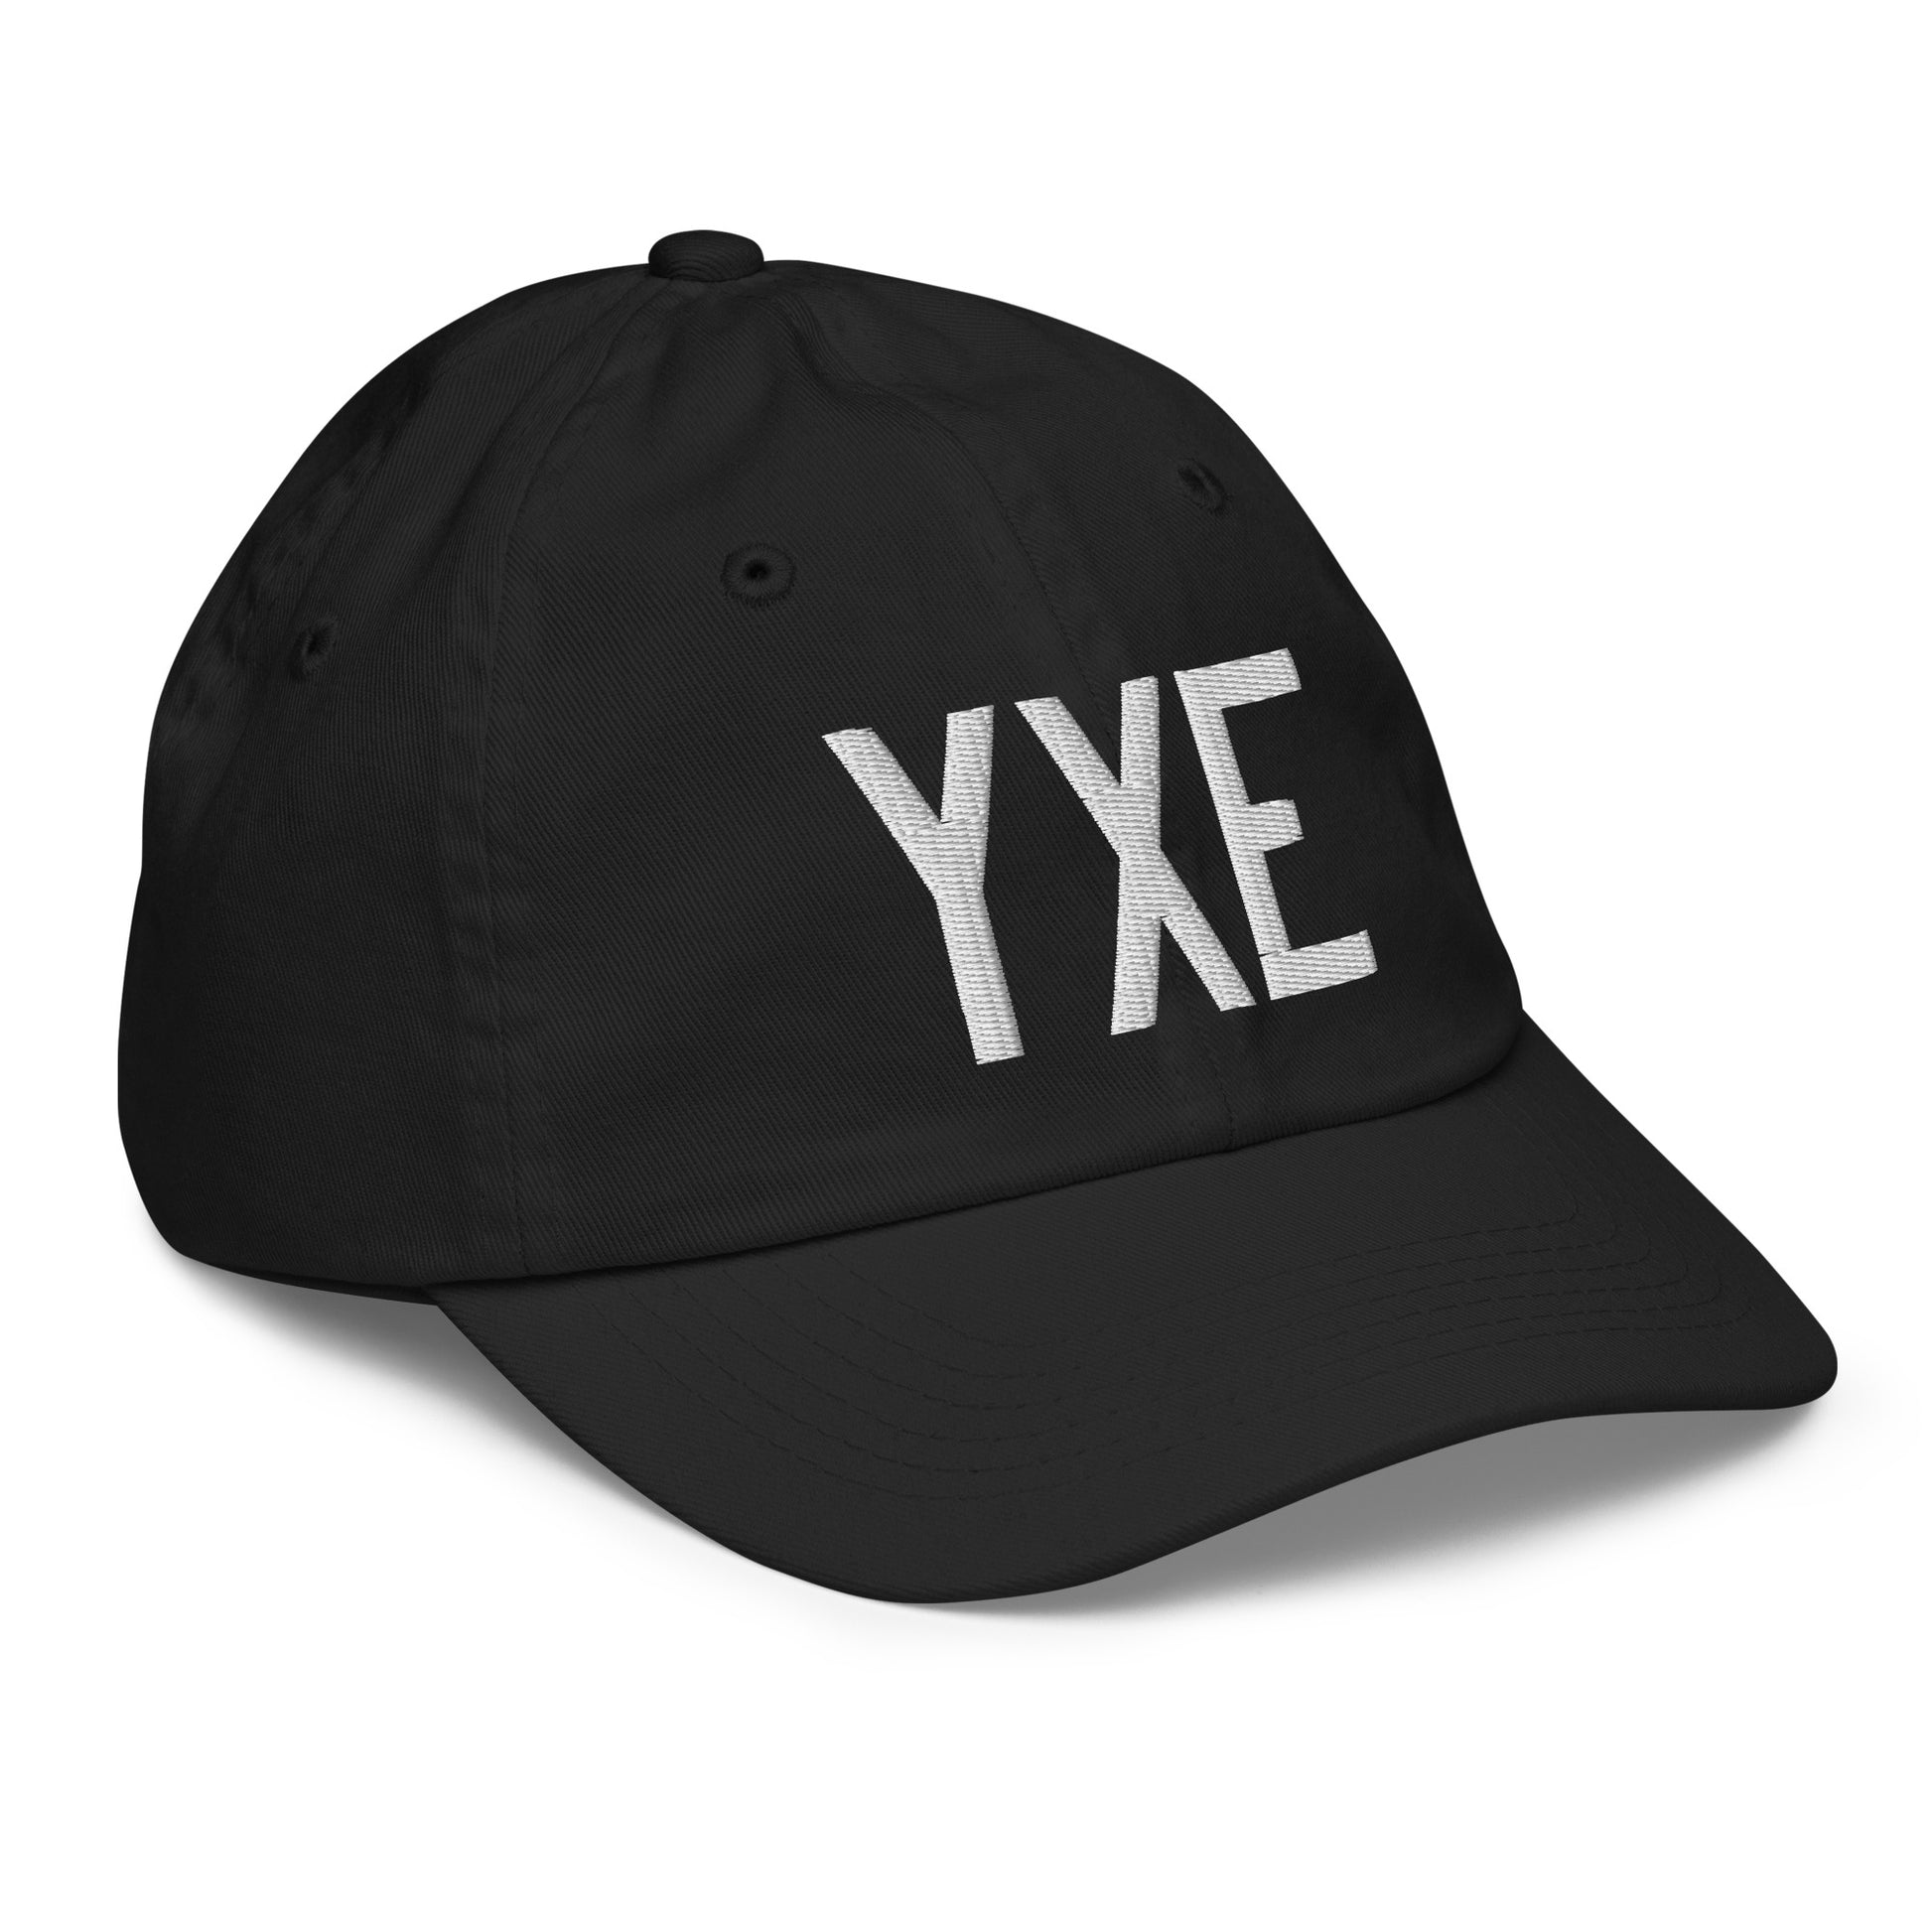 Airport Code Kid's Baseball Cap - White • YXE Saskatoon • YHM Designs - Image 12